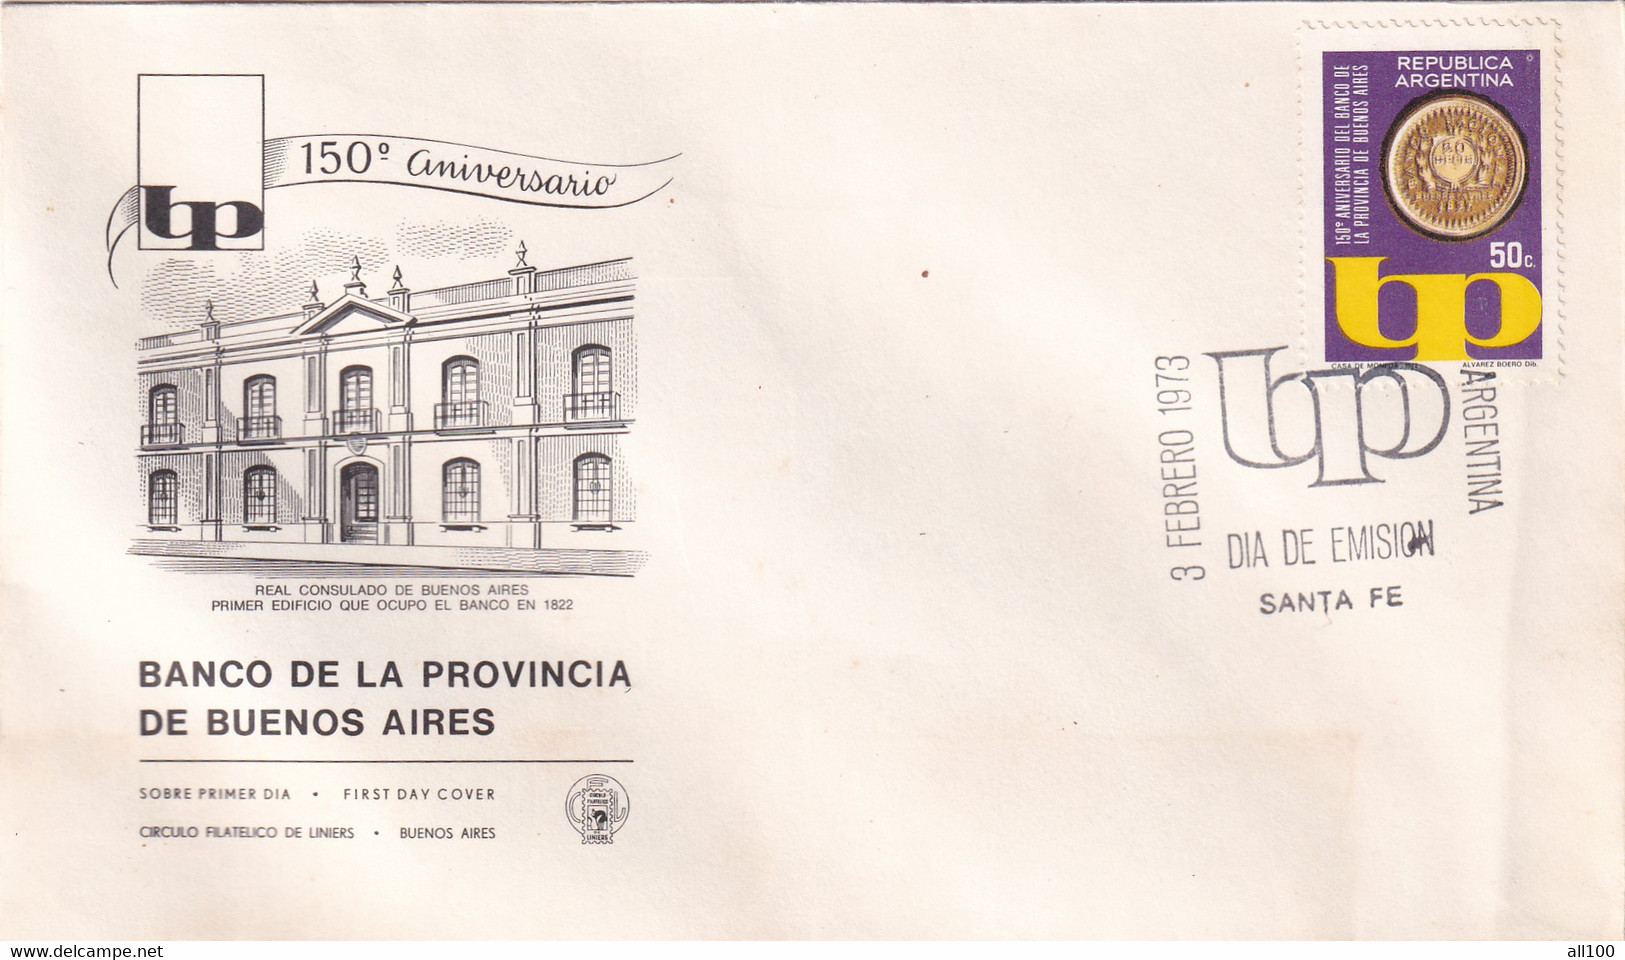 A21880 - FDC 150 Aniversario Banco De La Provincia De Buenos Aires Cover Envelope Unused 1973 Stamp Republica Argentina - FDC